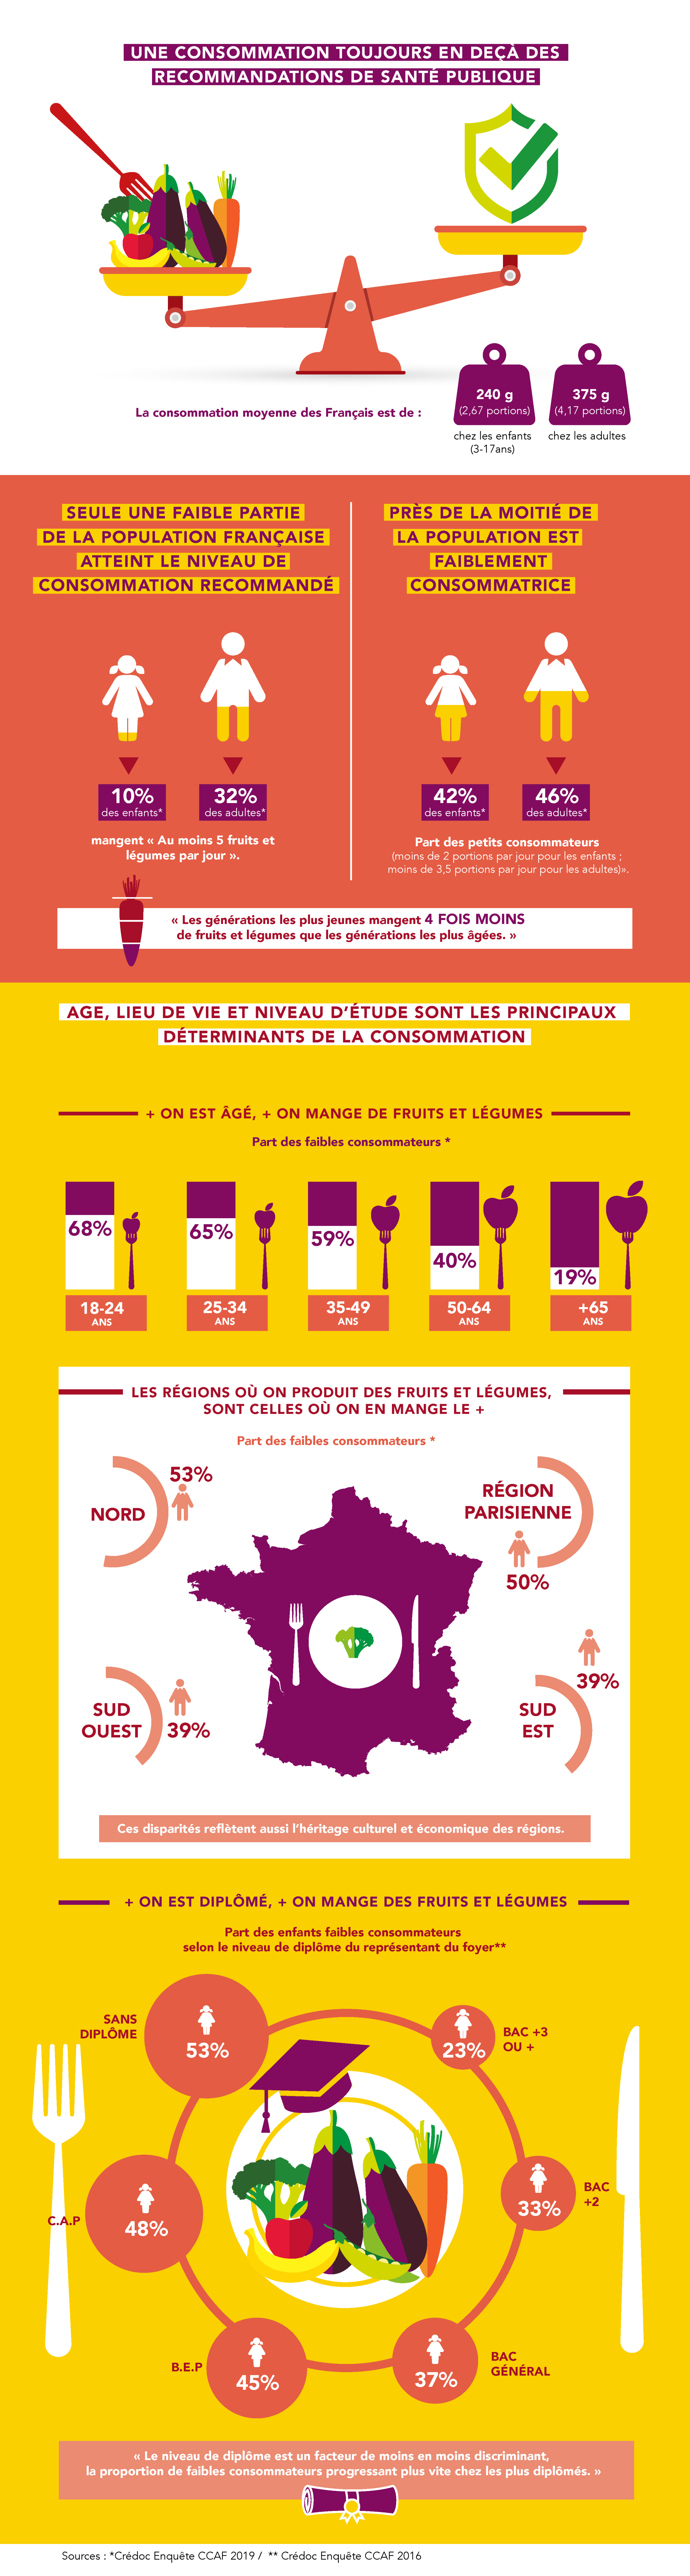 Infographie consommation fruits et légumes des français